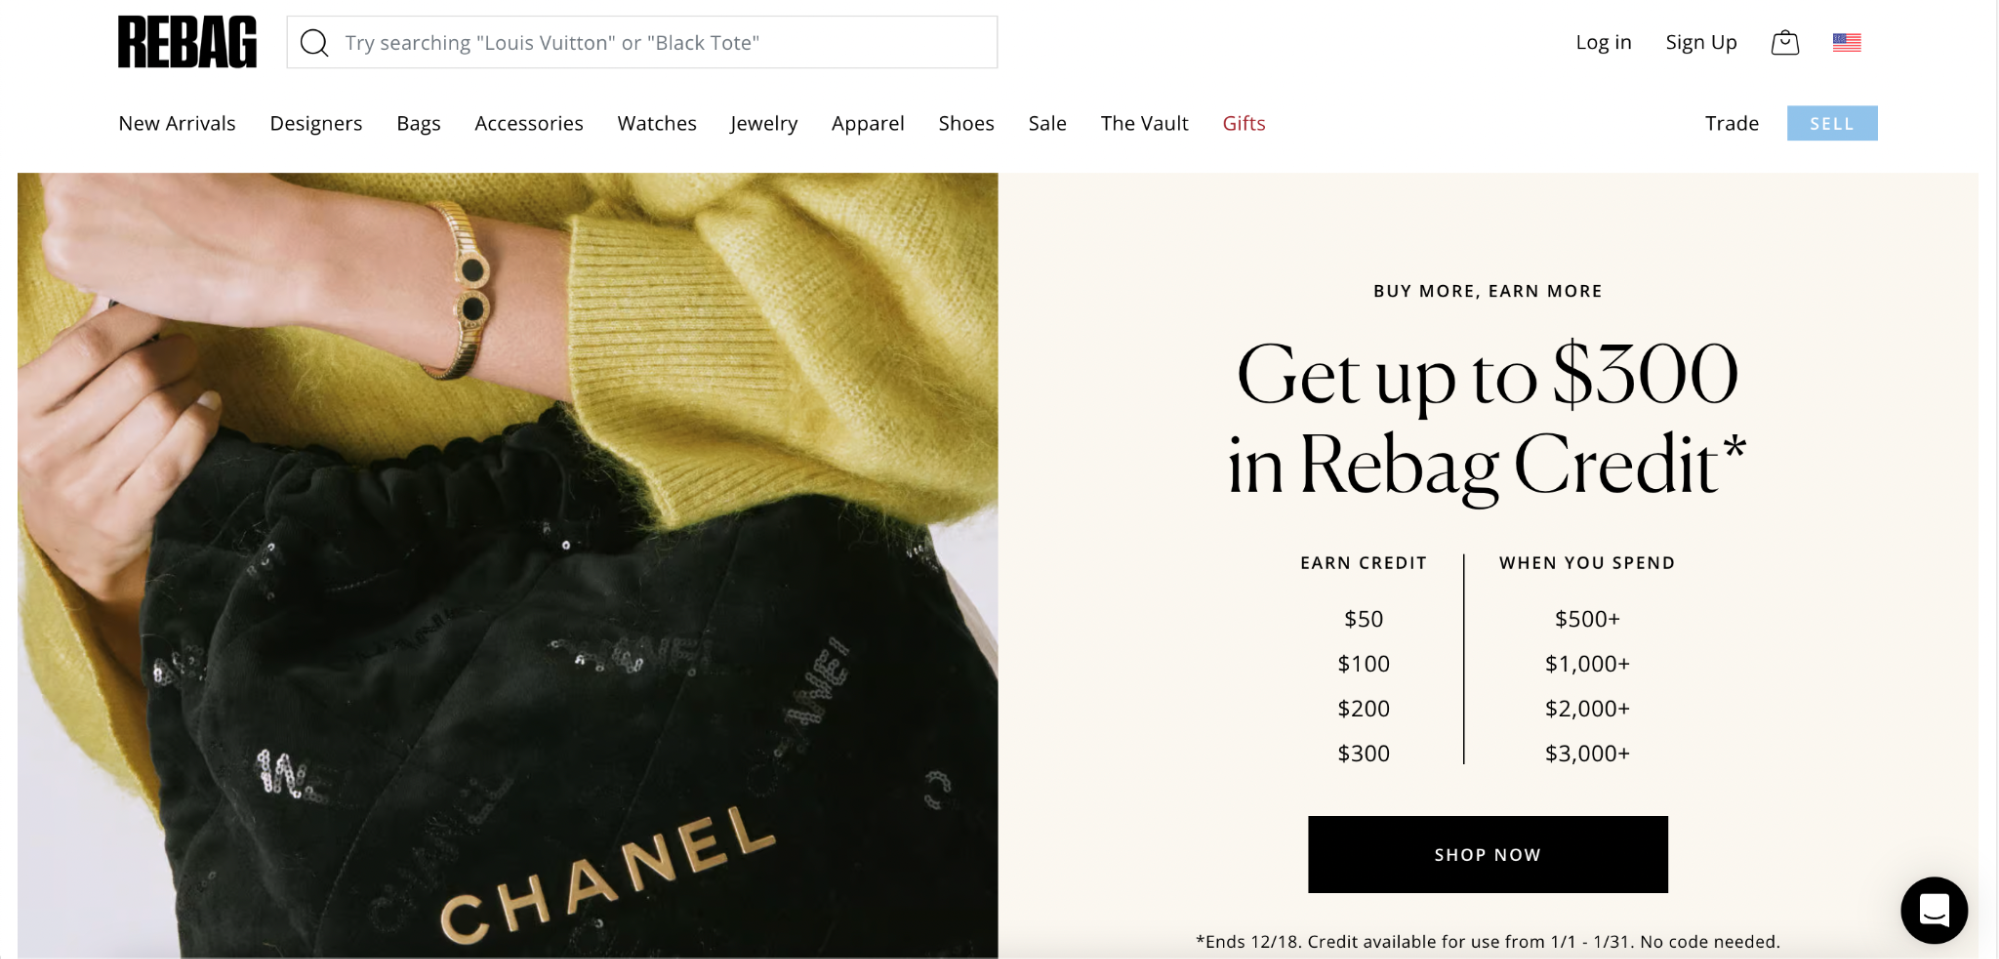 ReBag, a peer-to-peer marketplace for luxury bags